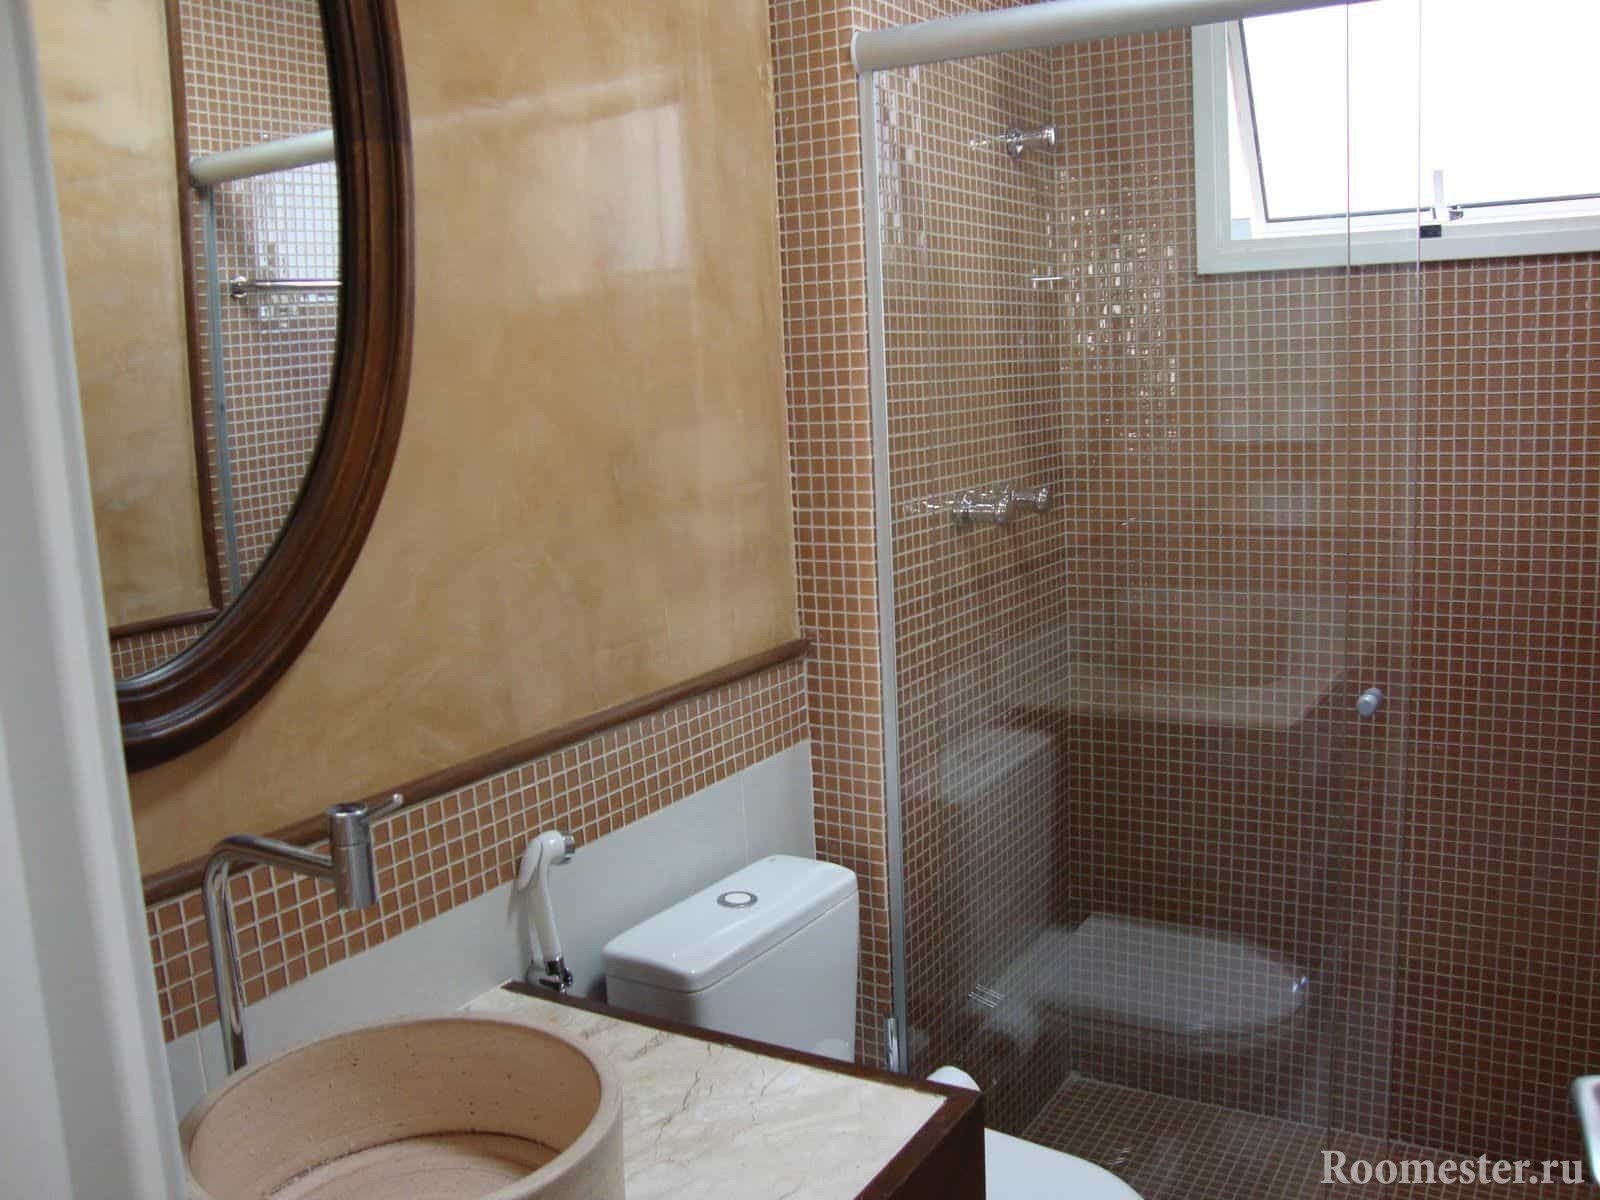 Мозаика популярна в отделке ванной комнаты в панельном доме